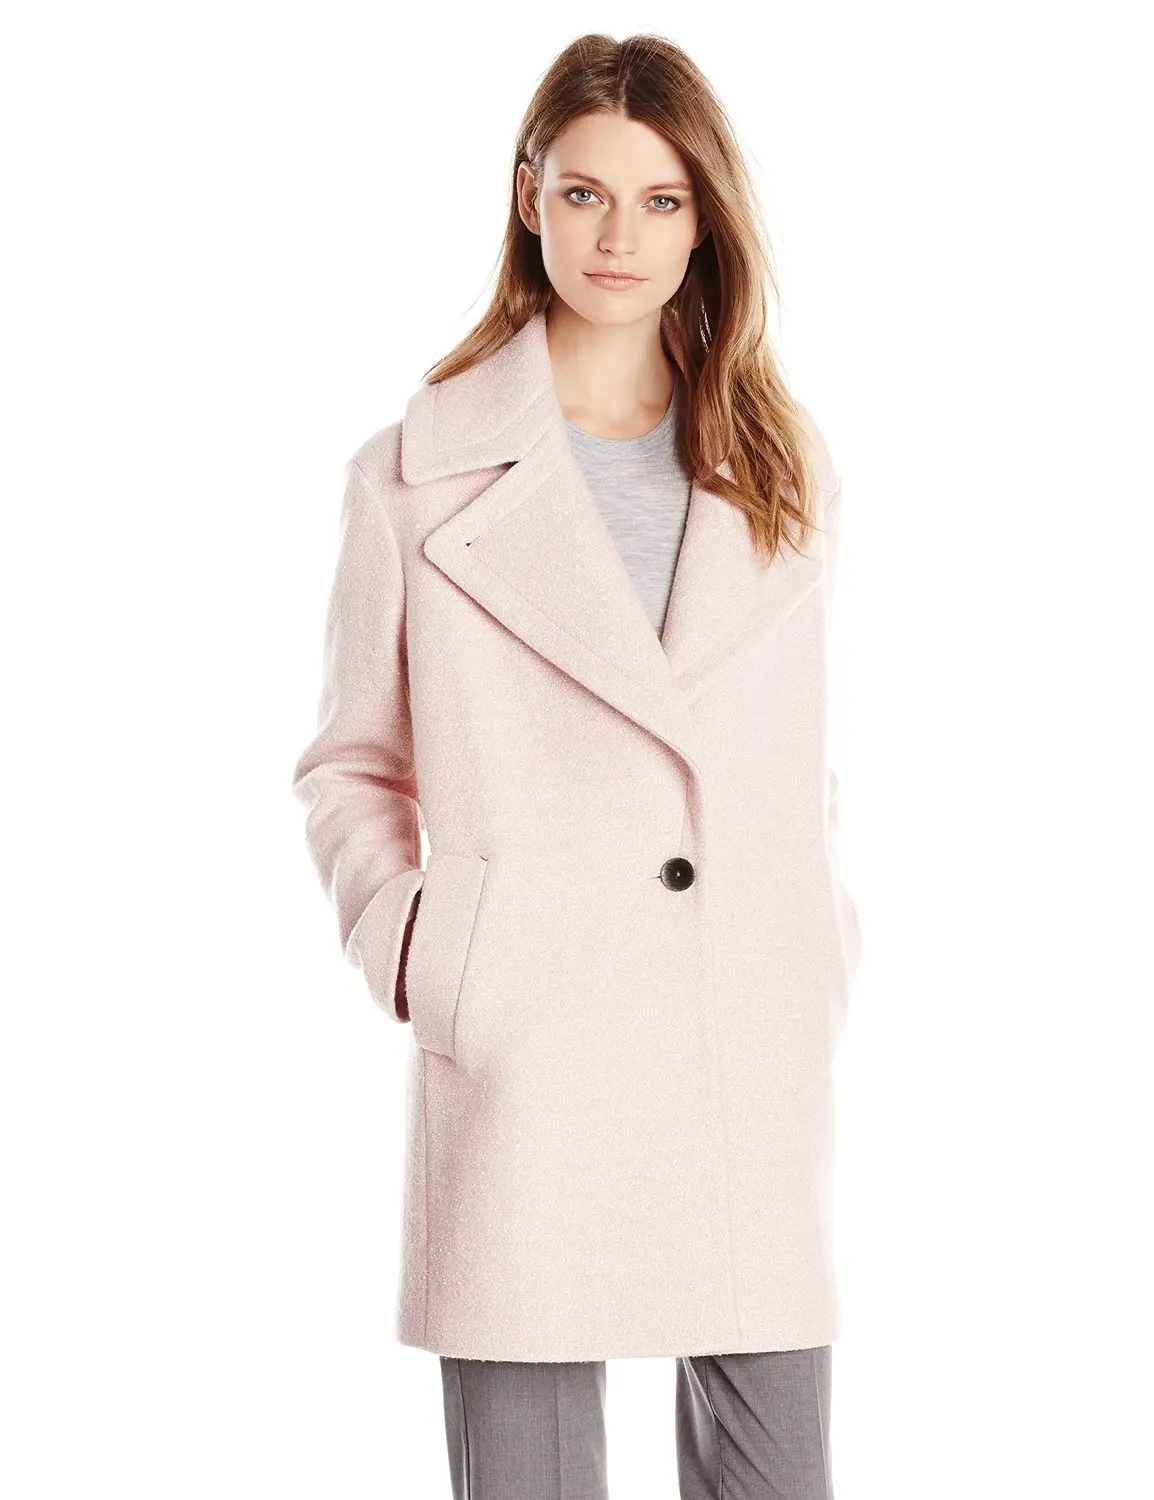 Aliexpress.com : Buy Women's Wool Blend Single button Cocoon Coat drop ...